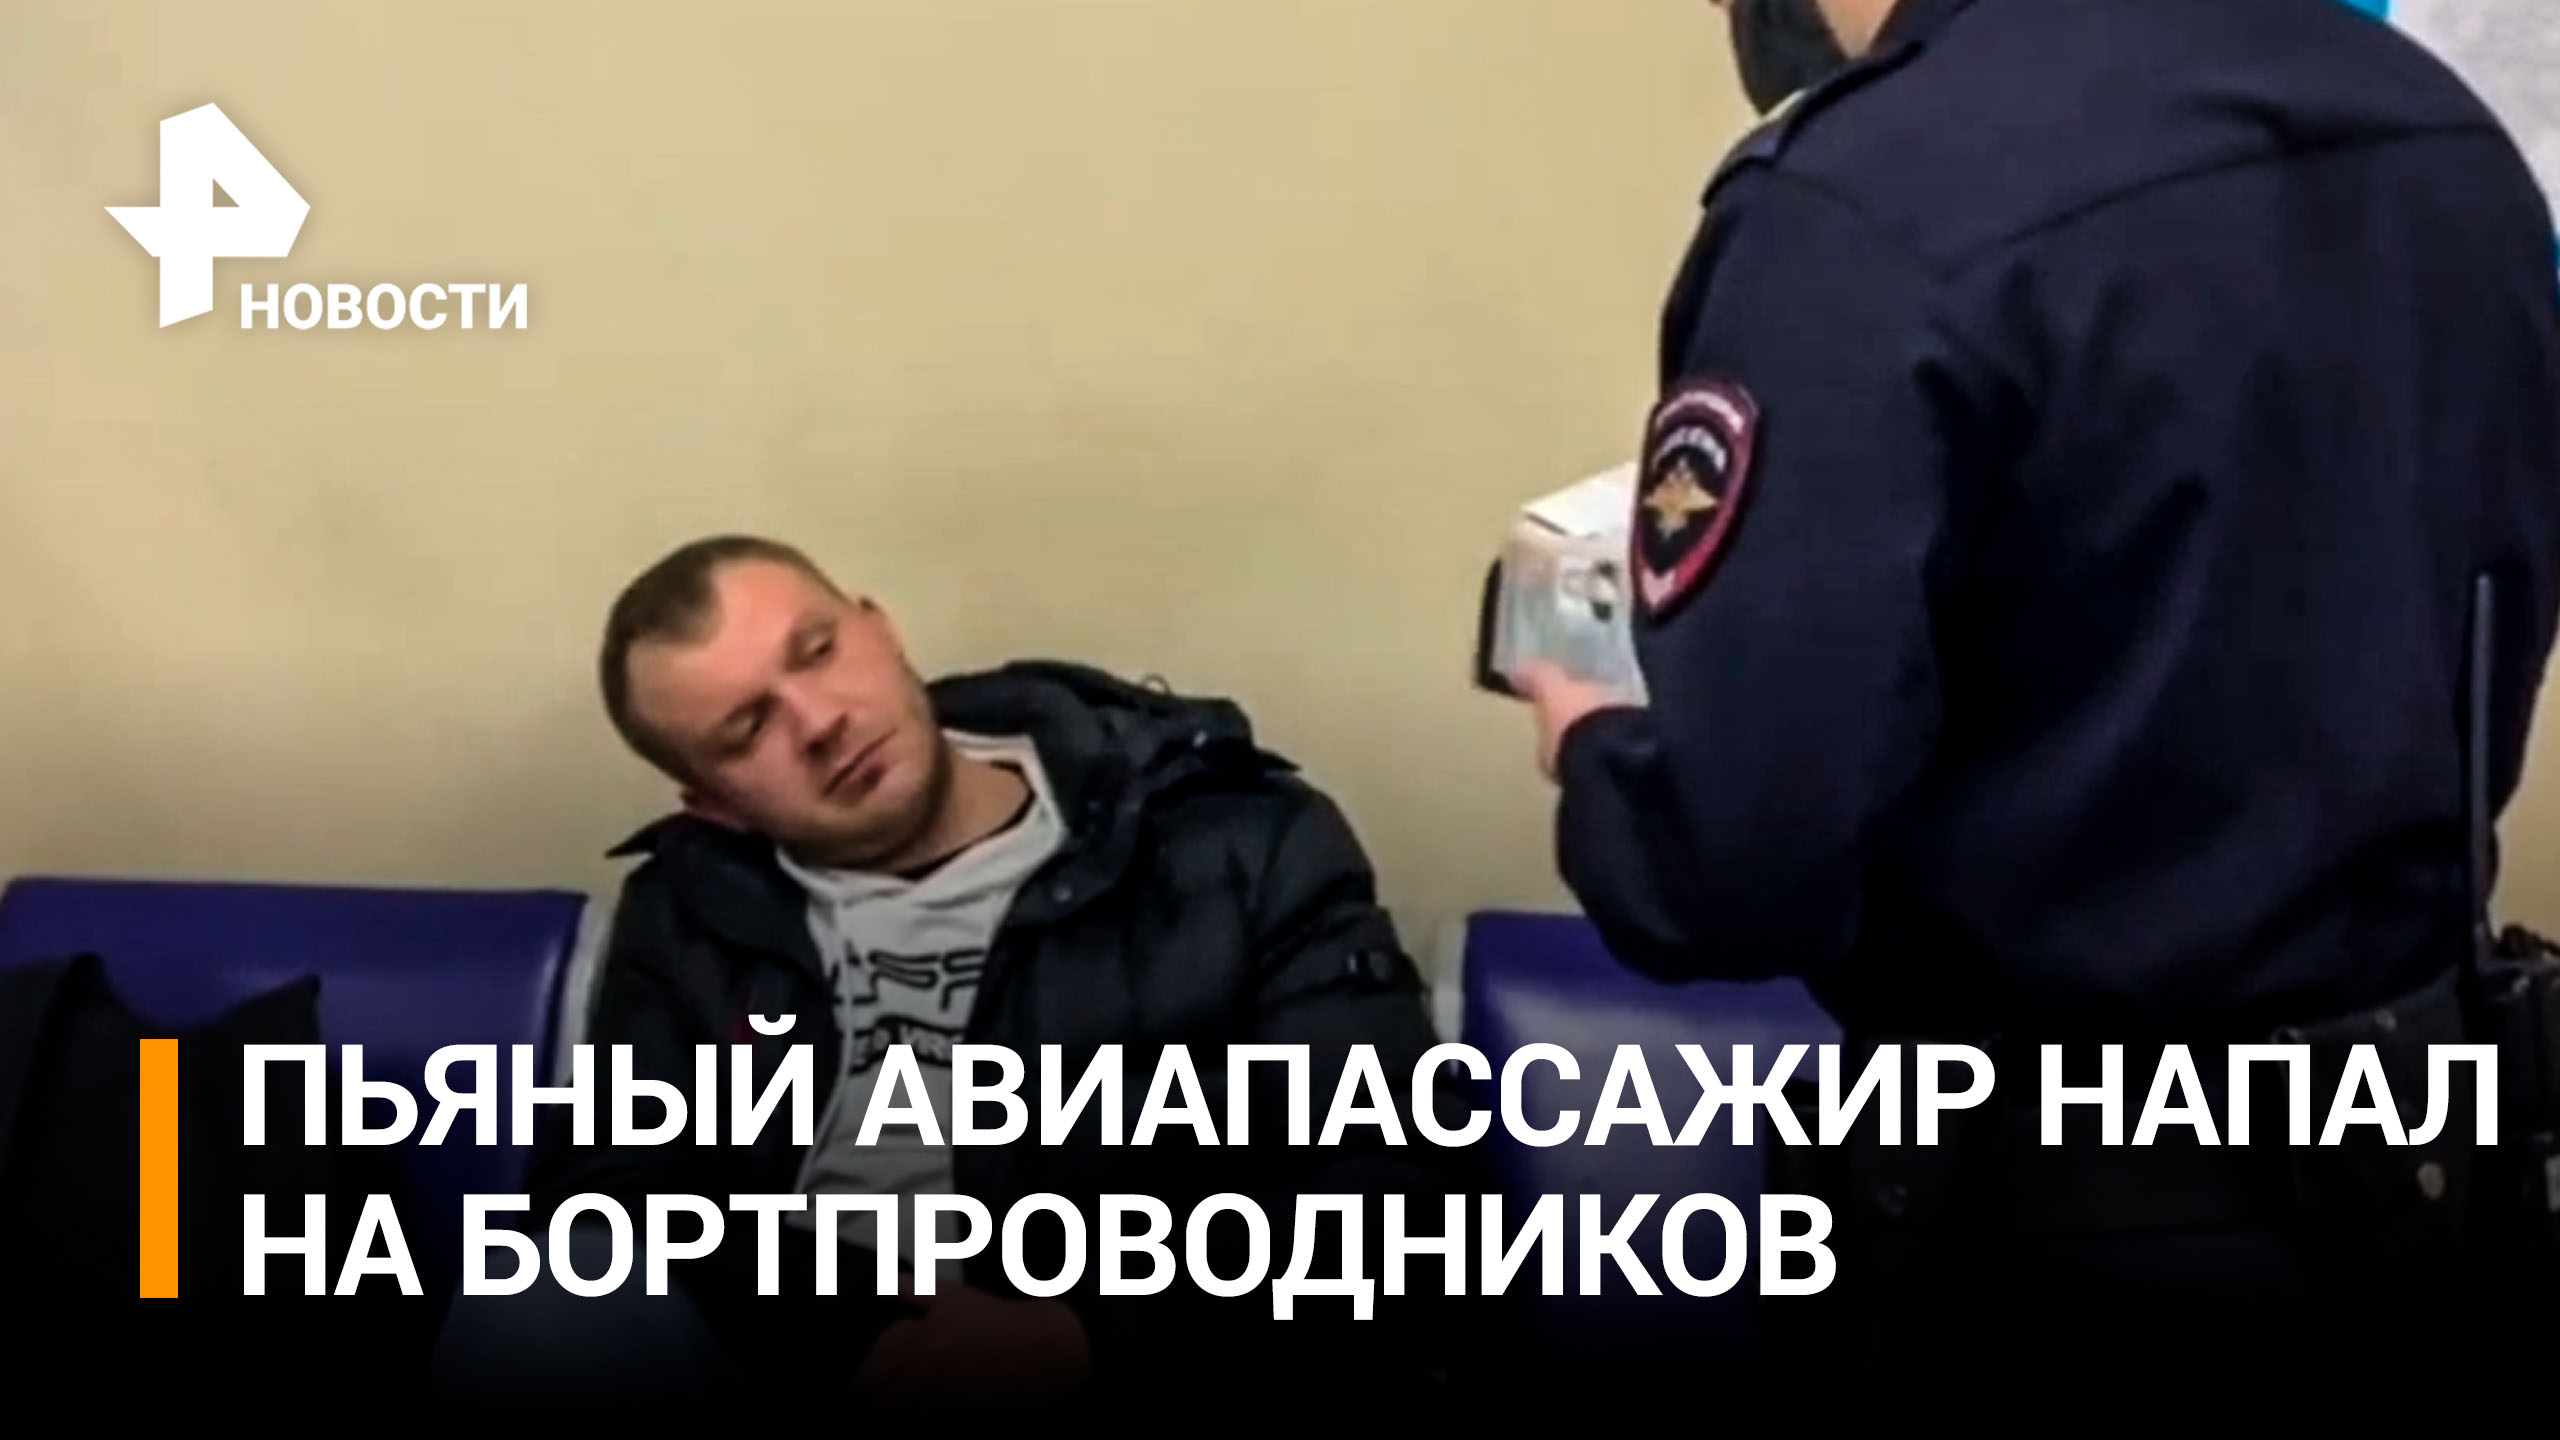 Авиапассажир в пьяном угаре избил бортпроводников / РЕН Новости